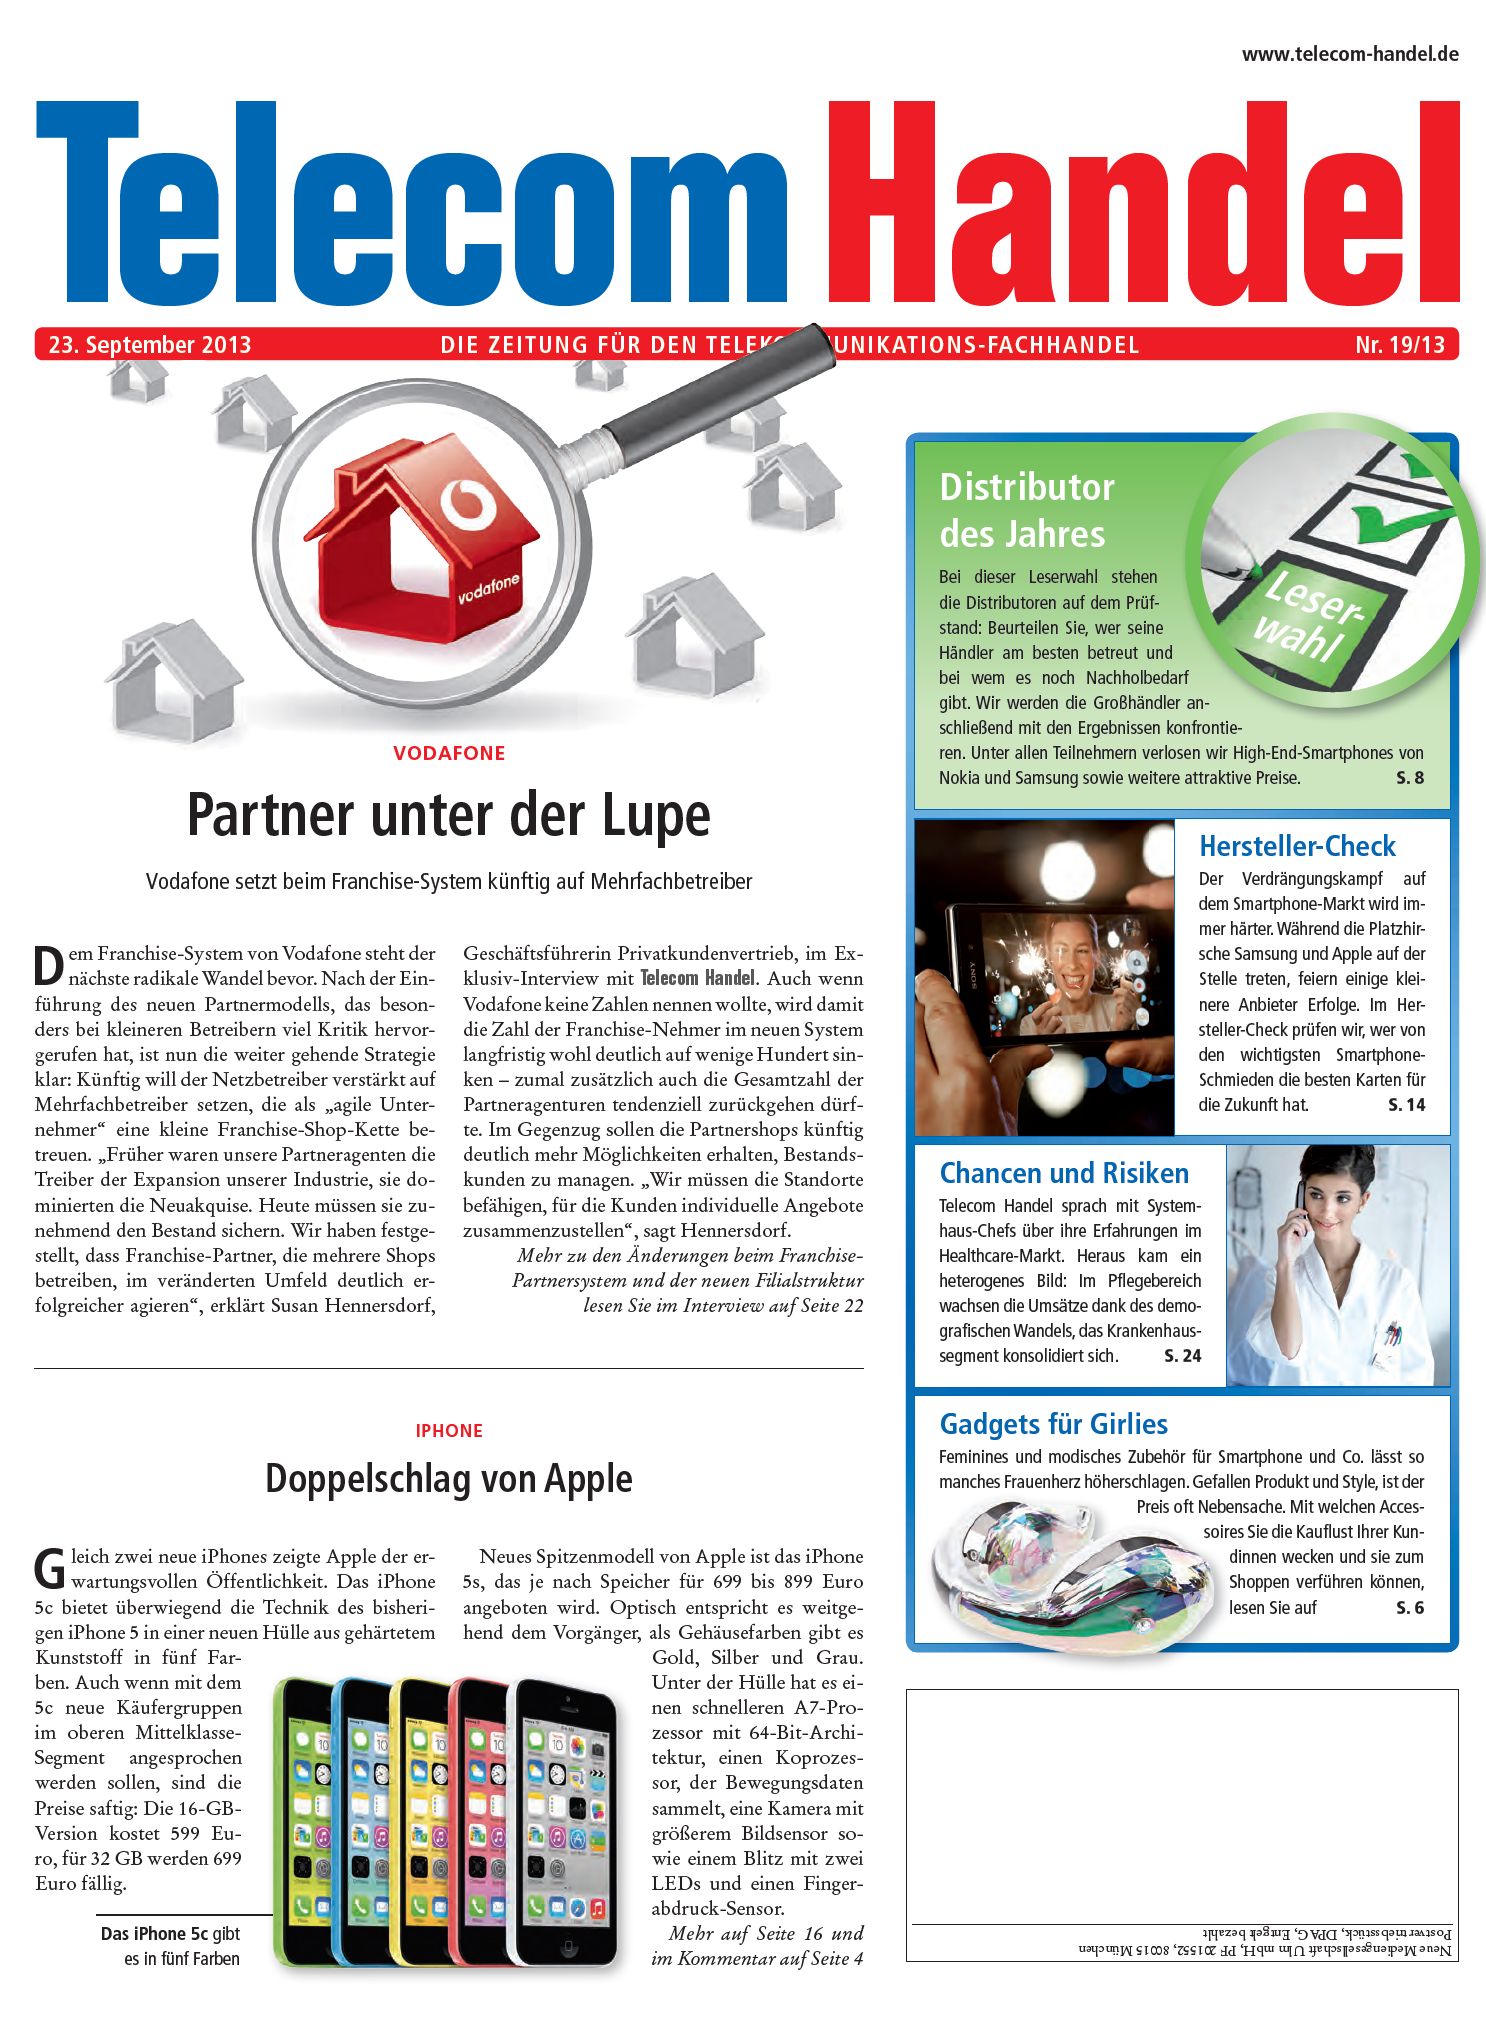 Telecom Handel Ausgabe 19/2013